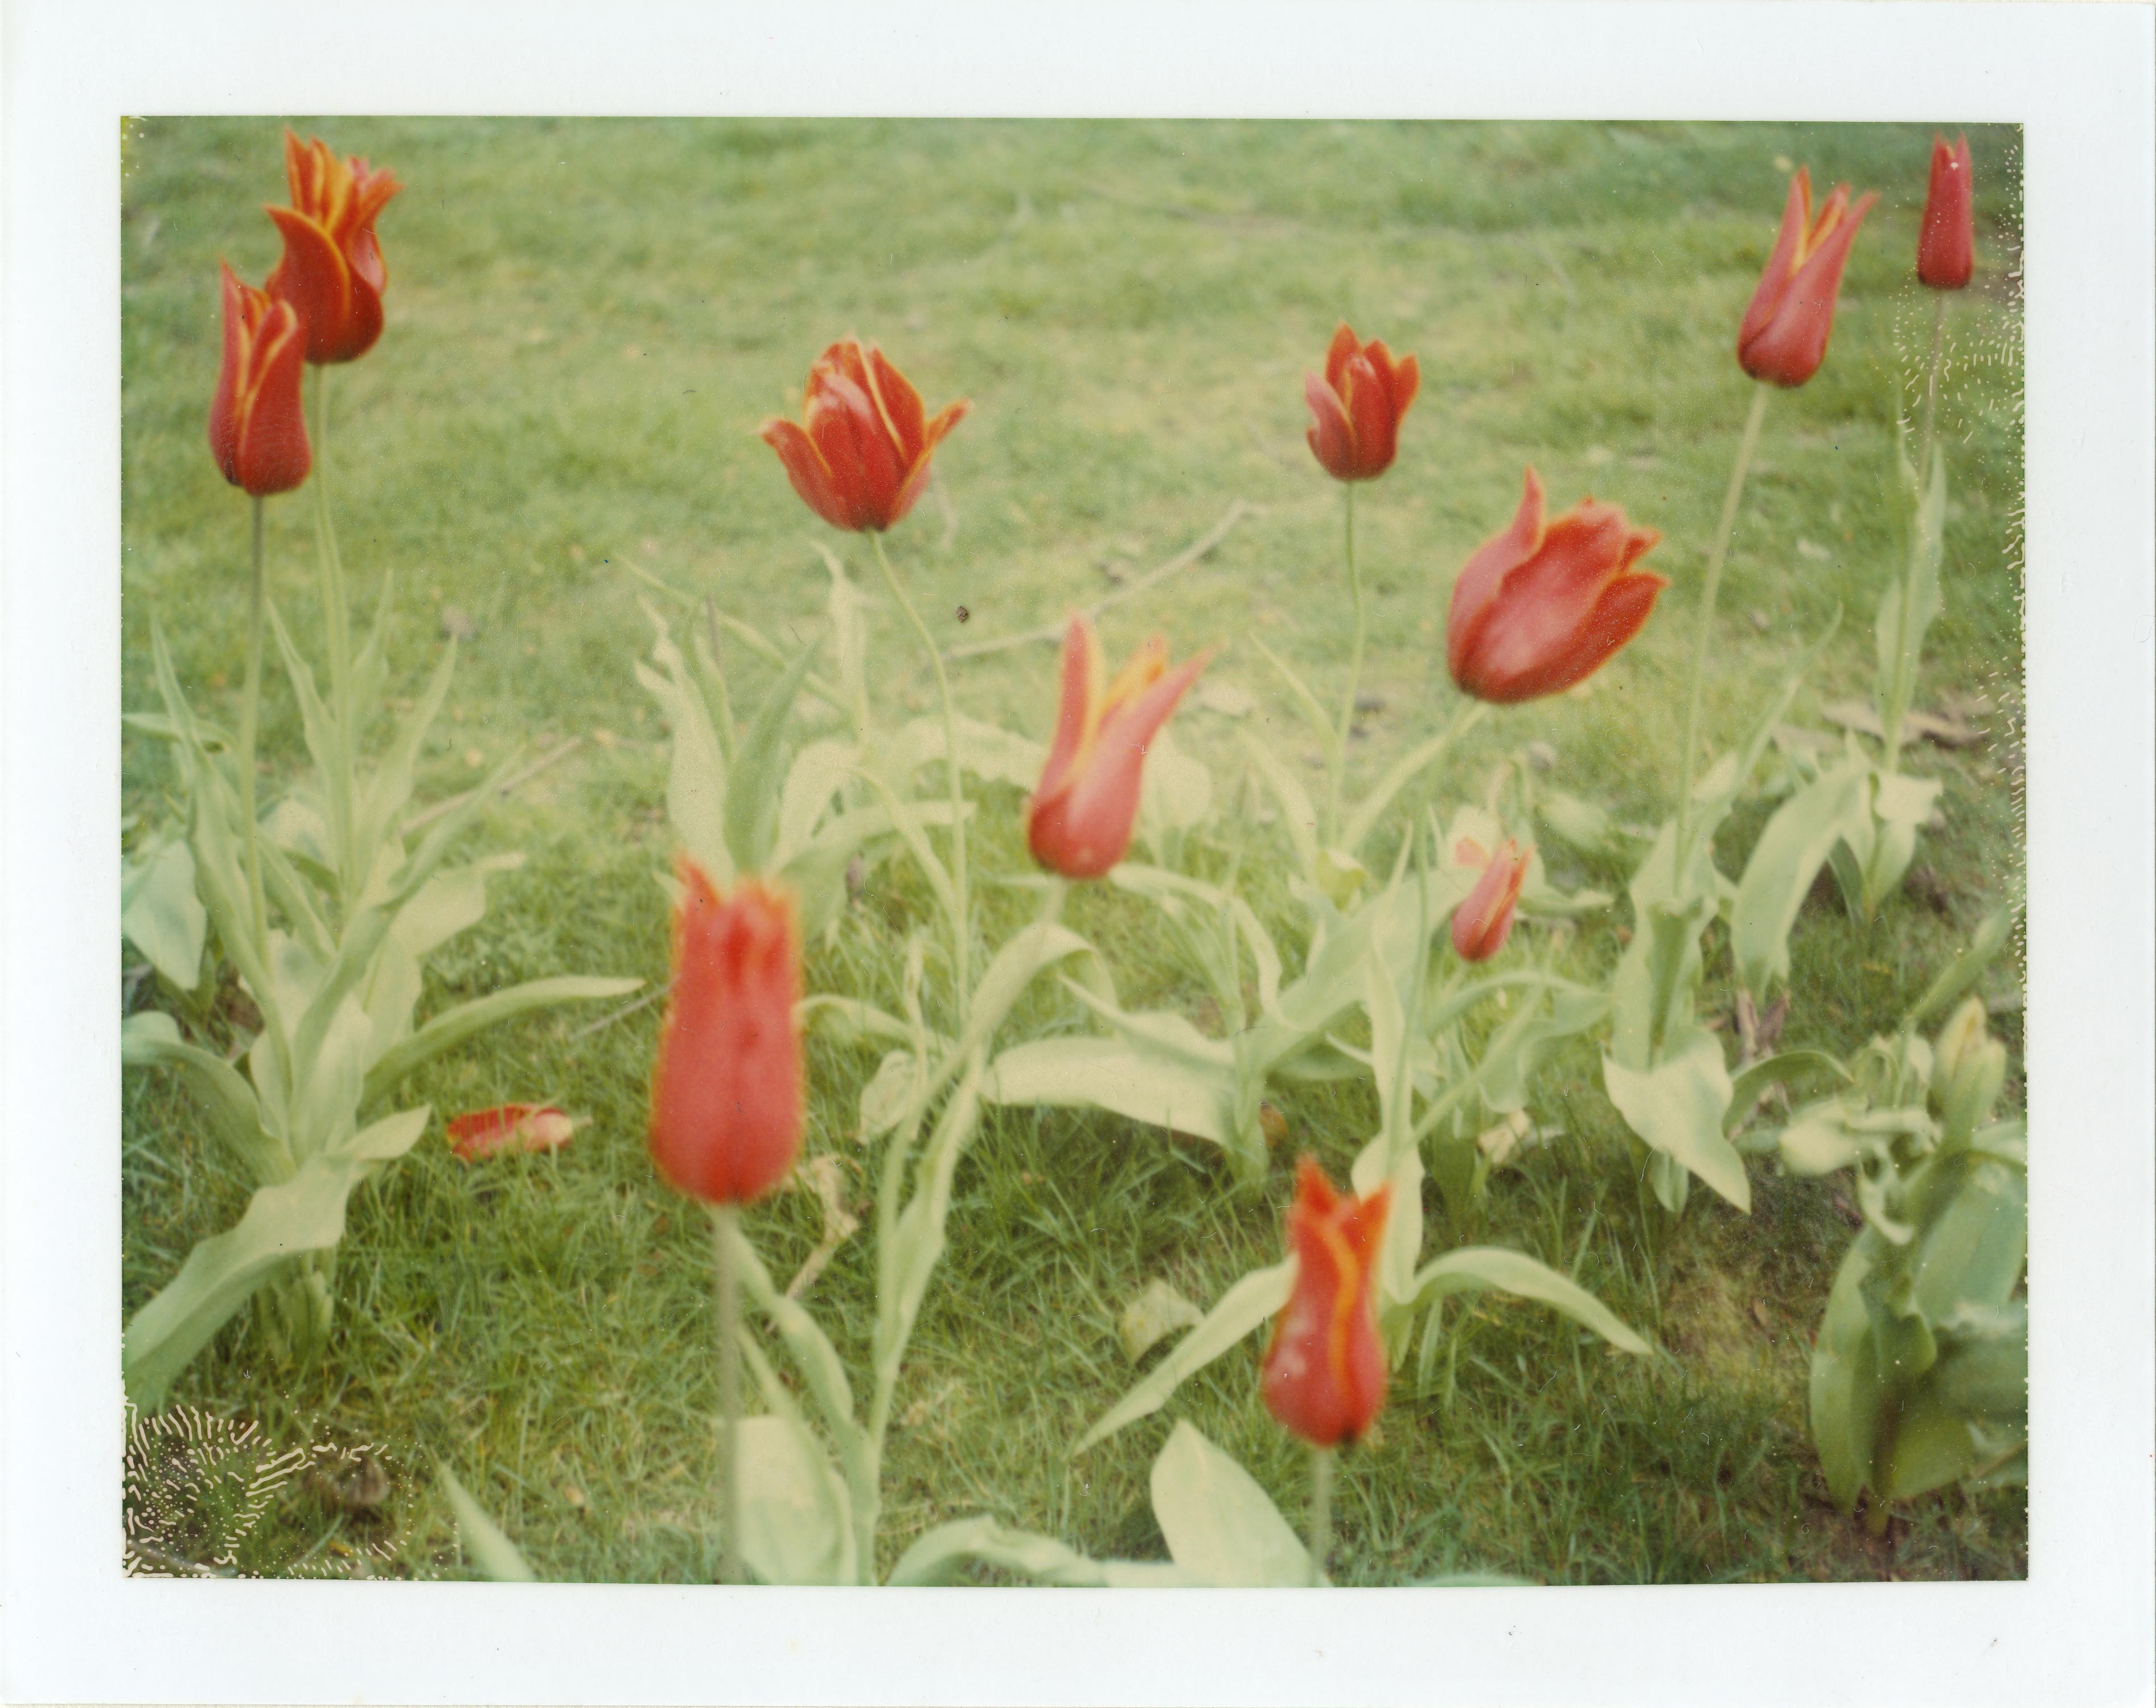 Springtime (Paris) - 4 pieces - analog, Polaroid, Contemporary - Photograph by Stefanie Schneider